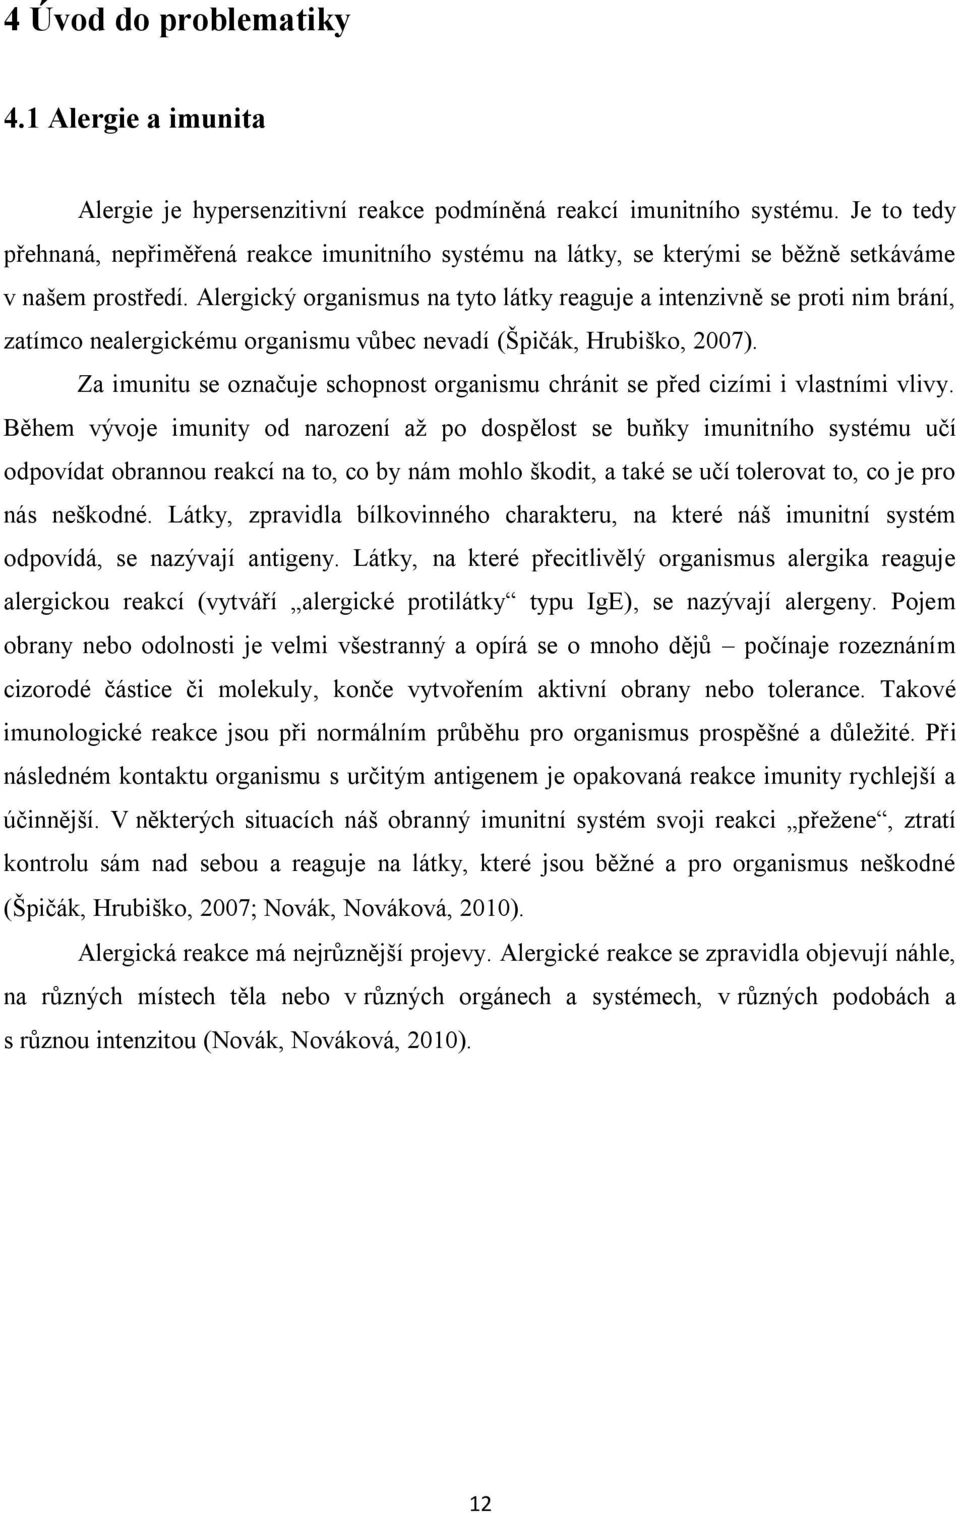 Alergický organismus na tyto látky reaguje a intenzivně se proti nim brání, zatímco nealergickému organismu vůbec nevadí (Špičák, Hrubiško, 2007).